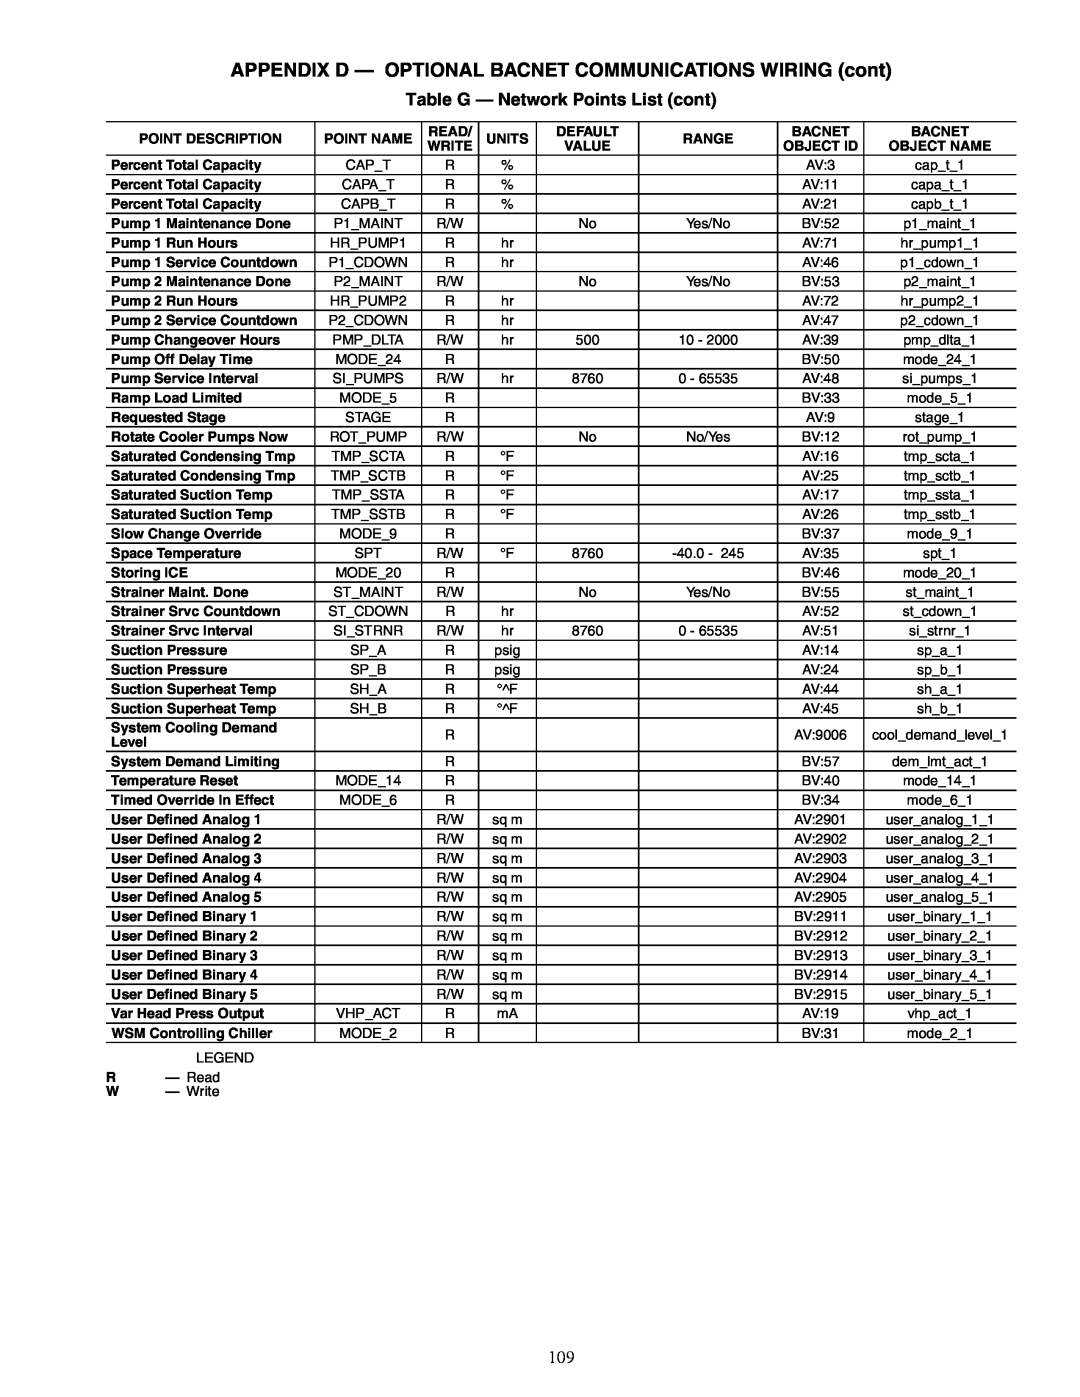 Carrier 30RAP010-060 specifications Table G — Network Points List cont, Point Description 